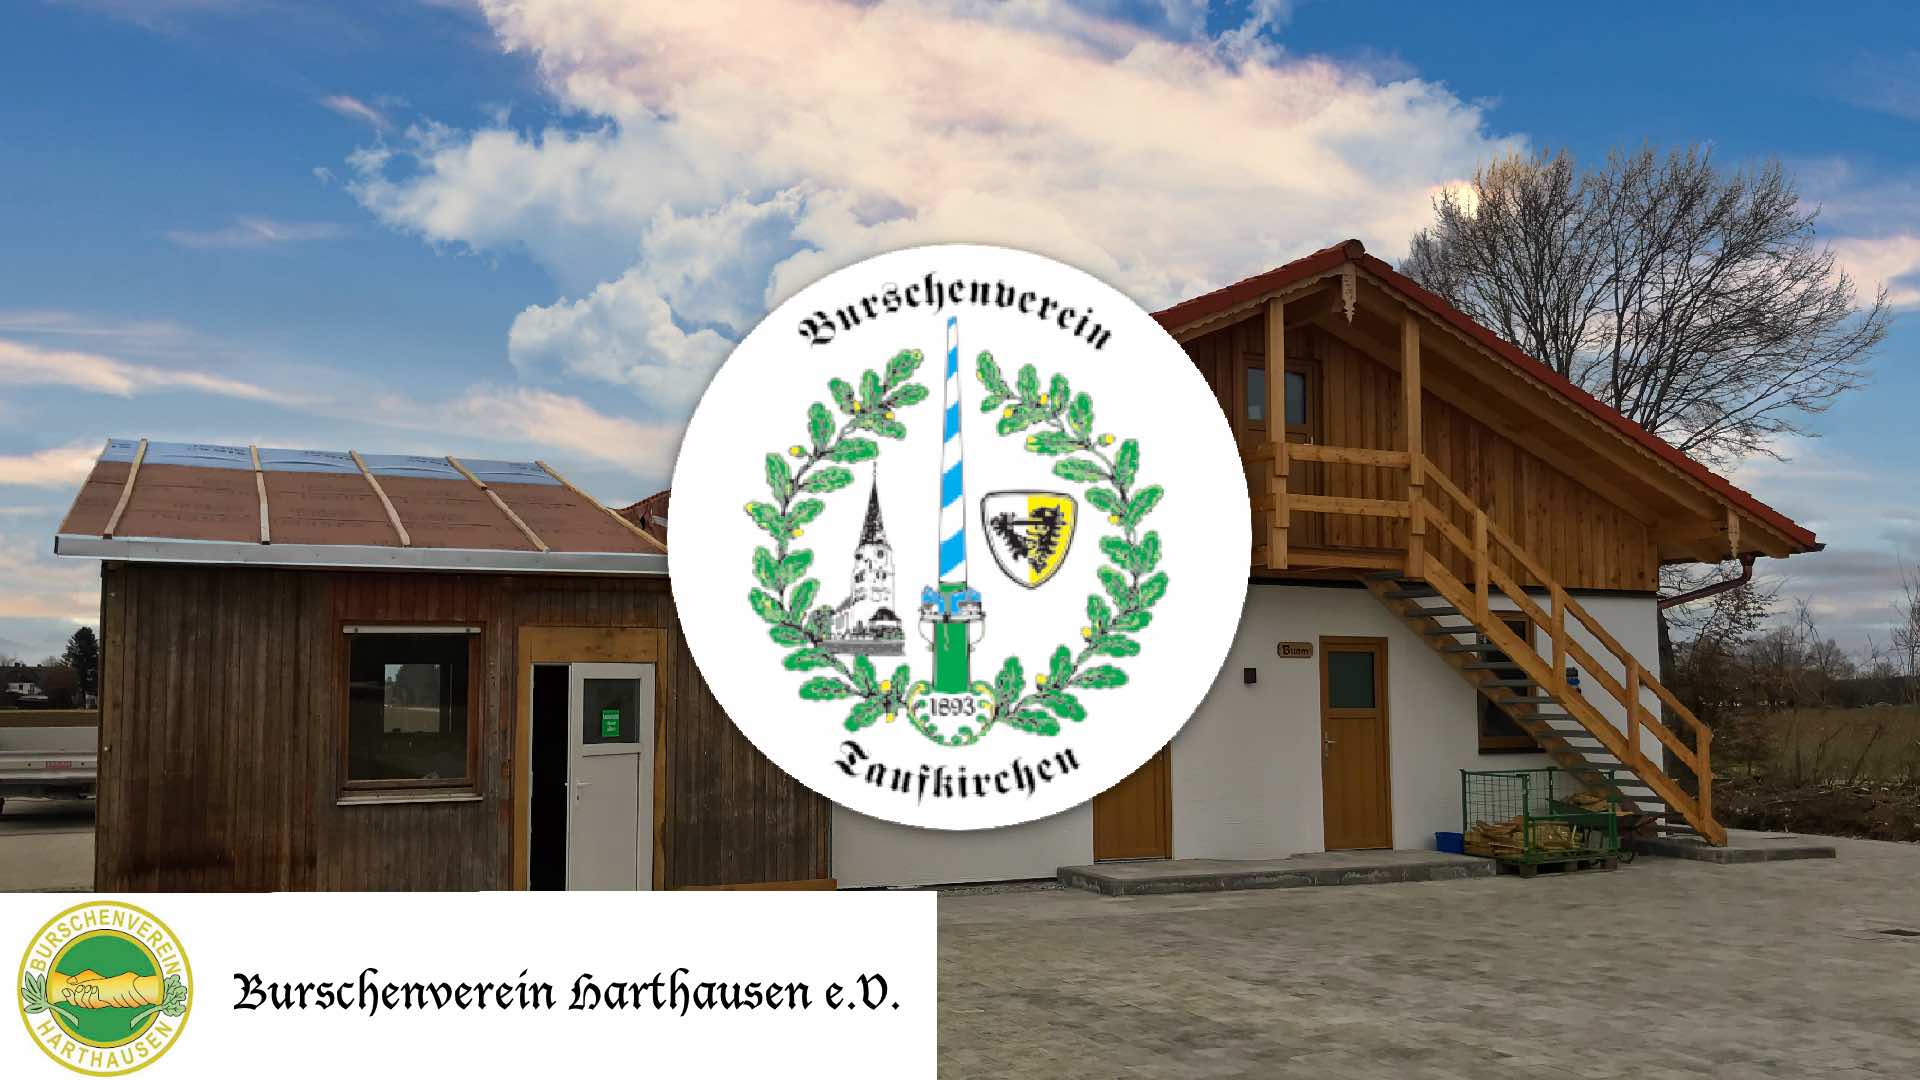 Maibaum-Gastwache mit dem Burschenverein Taufkirchen